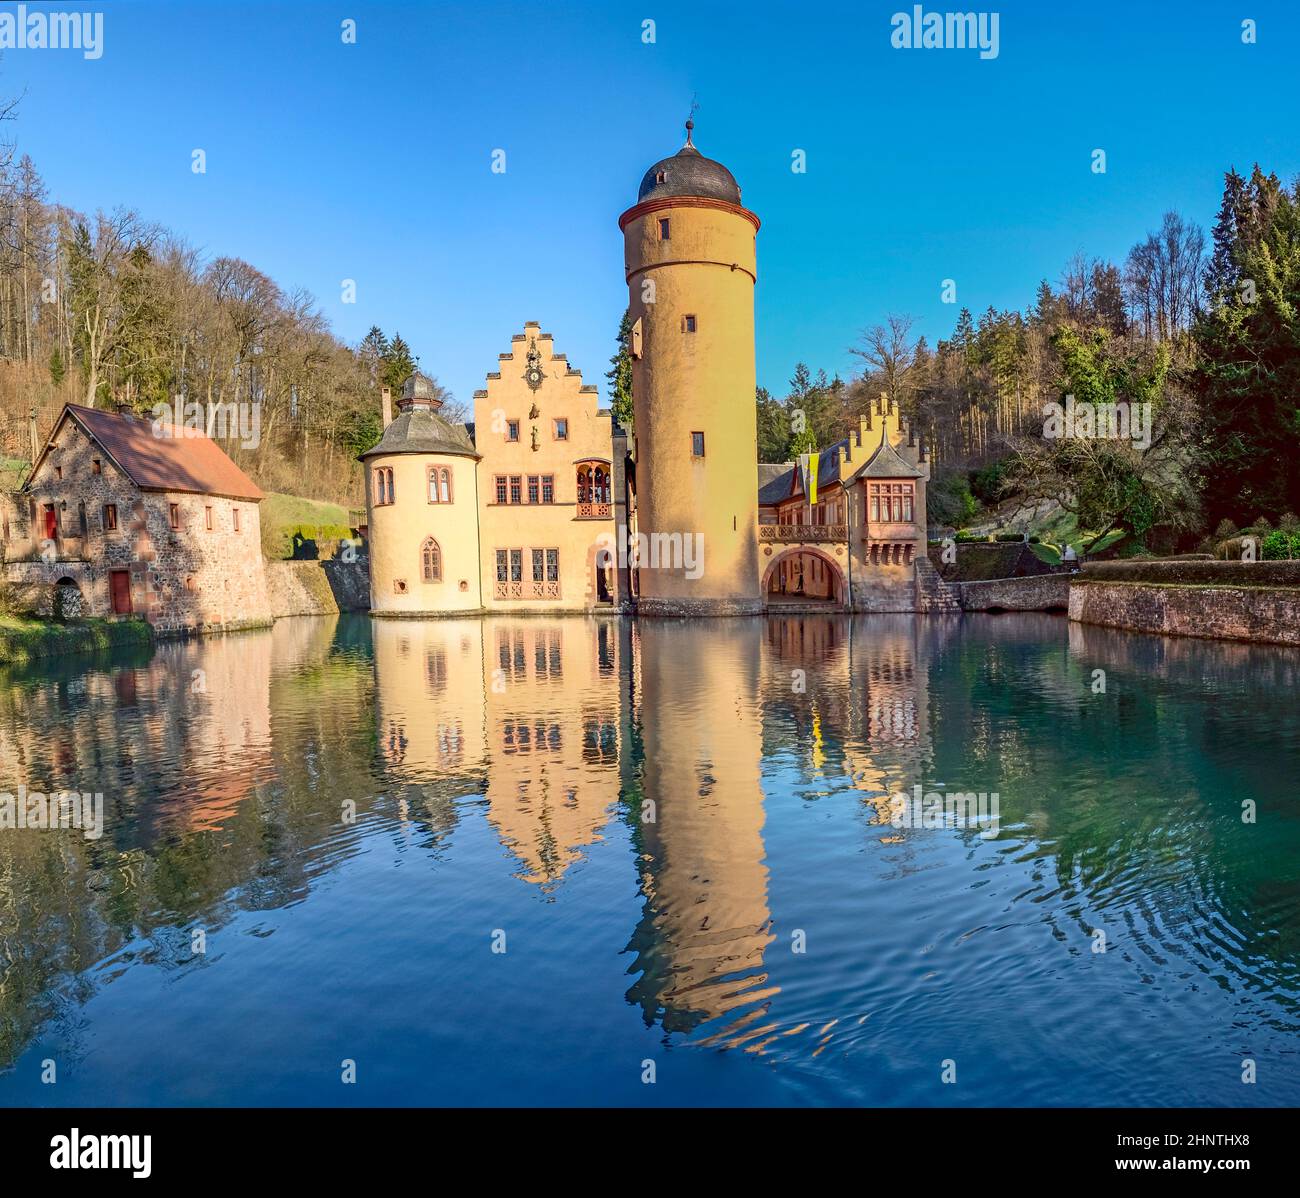 The Mespelbrunn water Castle  in Mespelbrunn, Bavaria, Germany Stock Photo